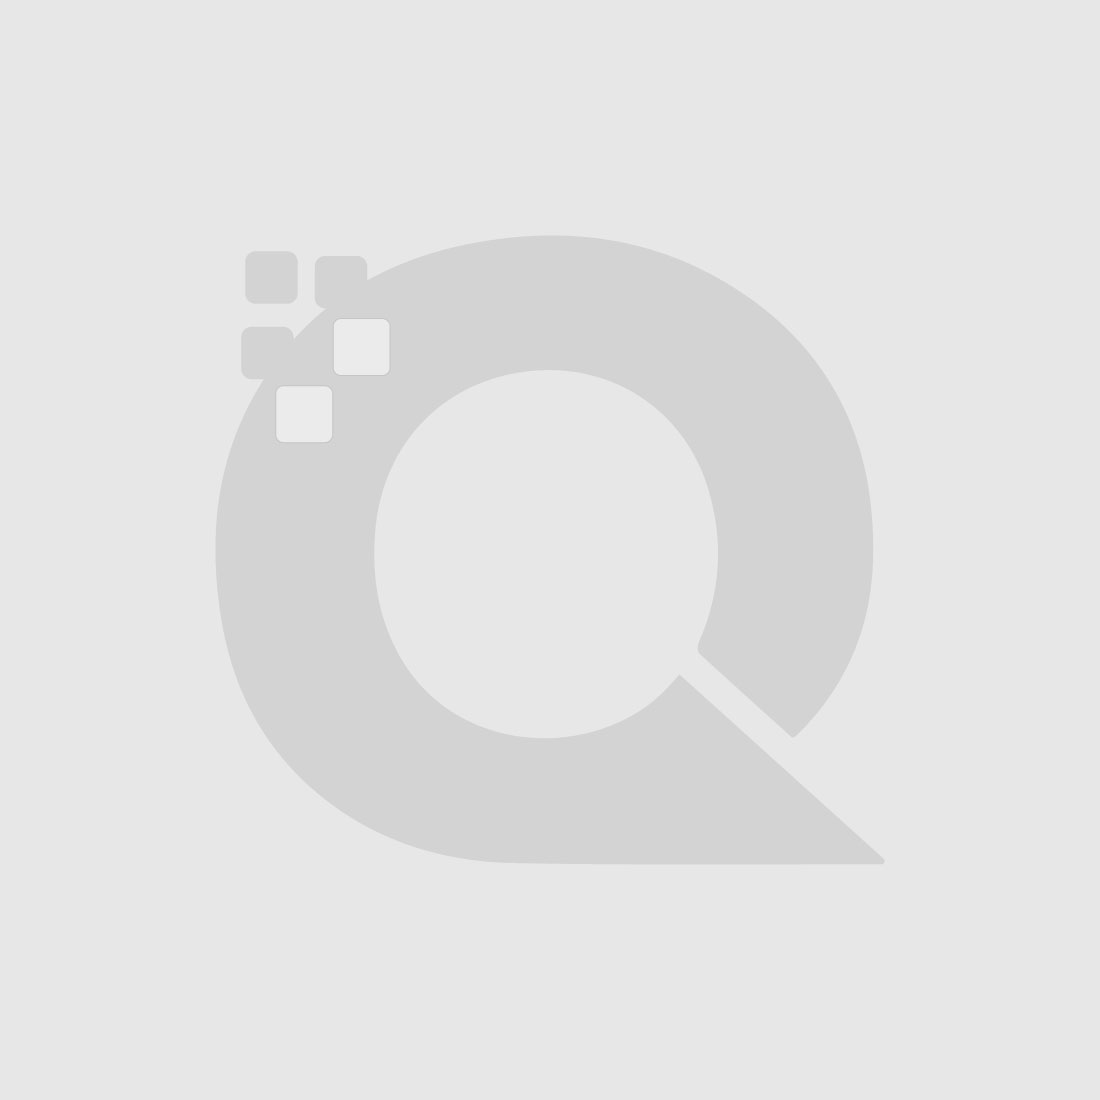 Guerniss Paris Velvet Matte Lipstick - GS034 - 3.5g